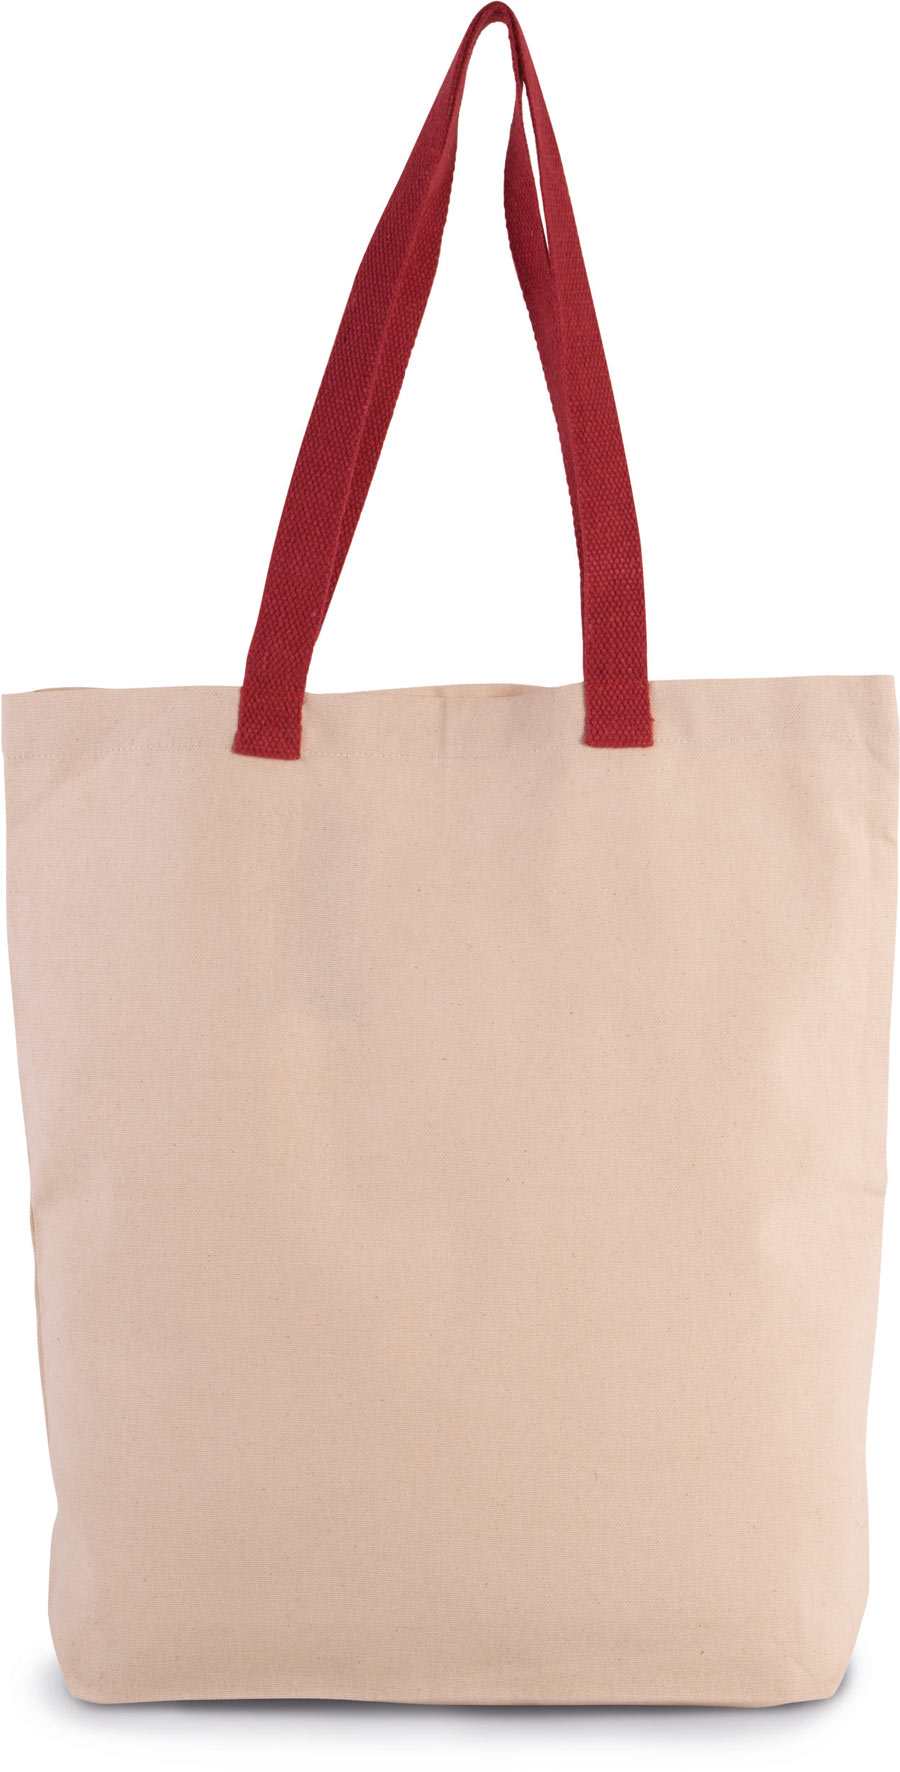 KI0278 Shopper Bag